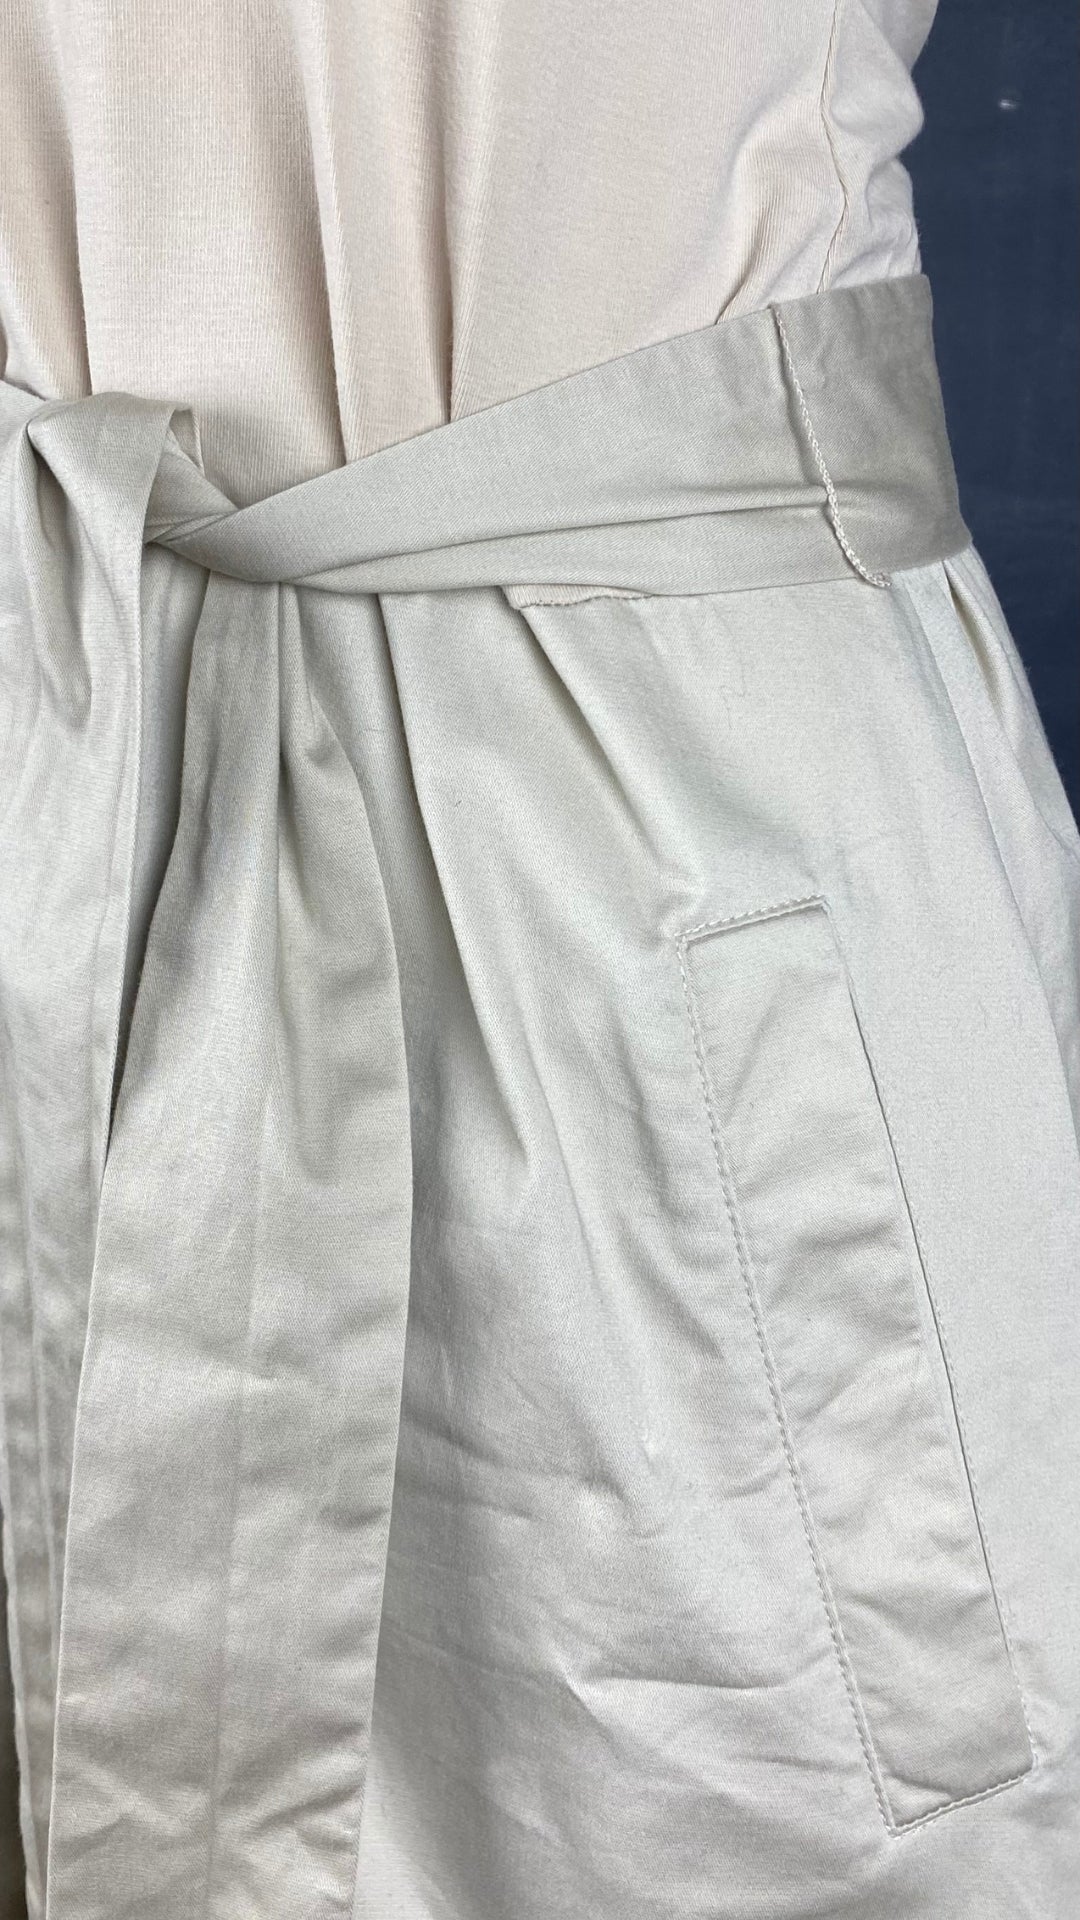 Robe greige bi-matière avec poches Tristan & Iseut, taille small. Vue de près des tissus.